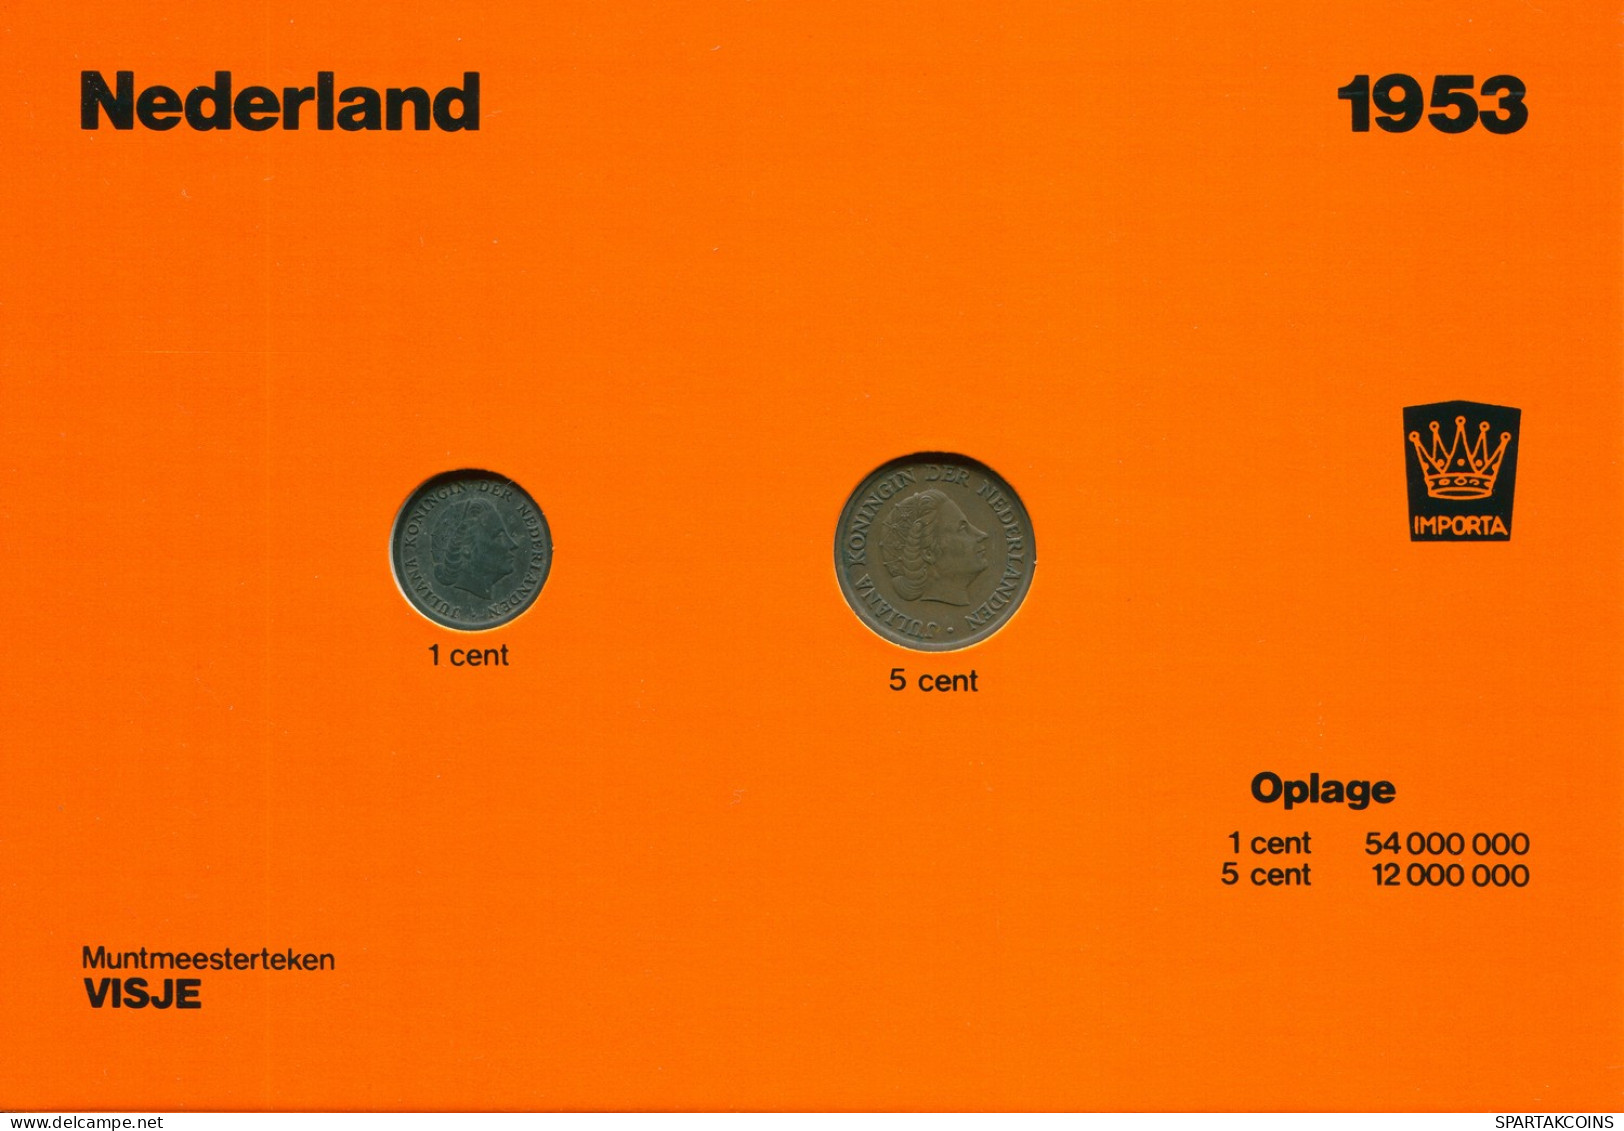 NETHERLANDS 1953 MINT SET 2 Coin #SET1005.7.U - Mint Sets & Proof Sets